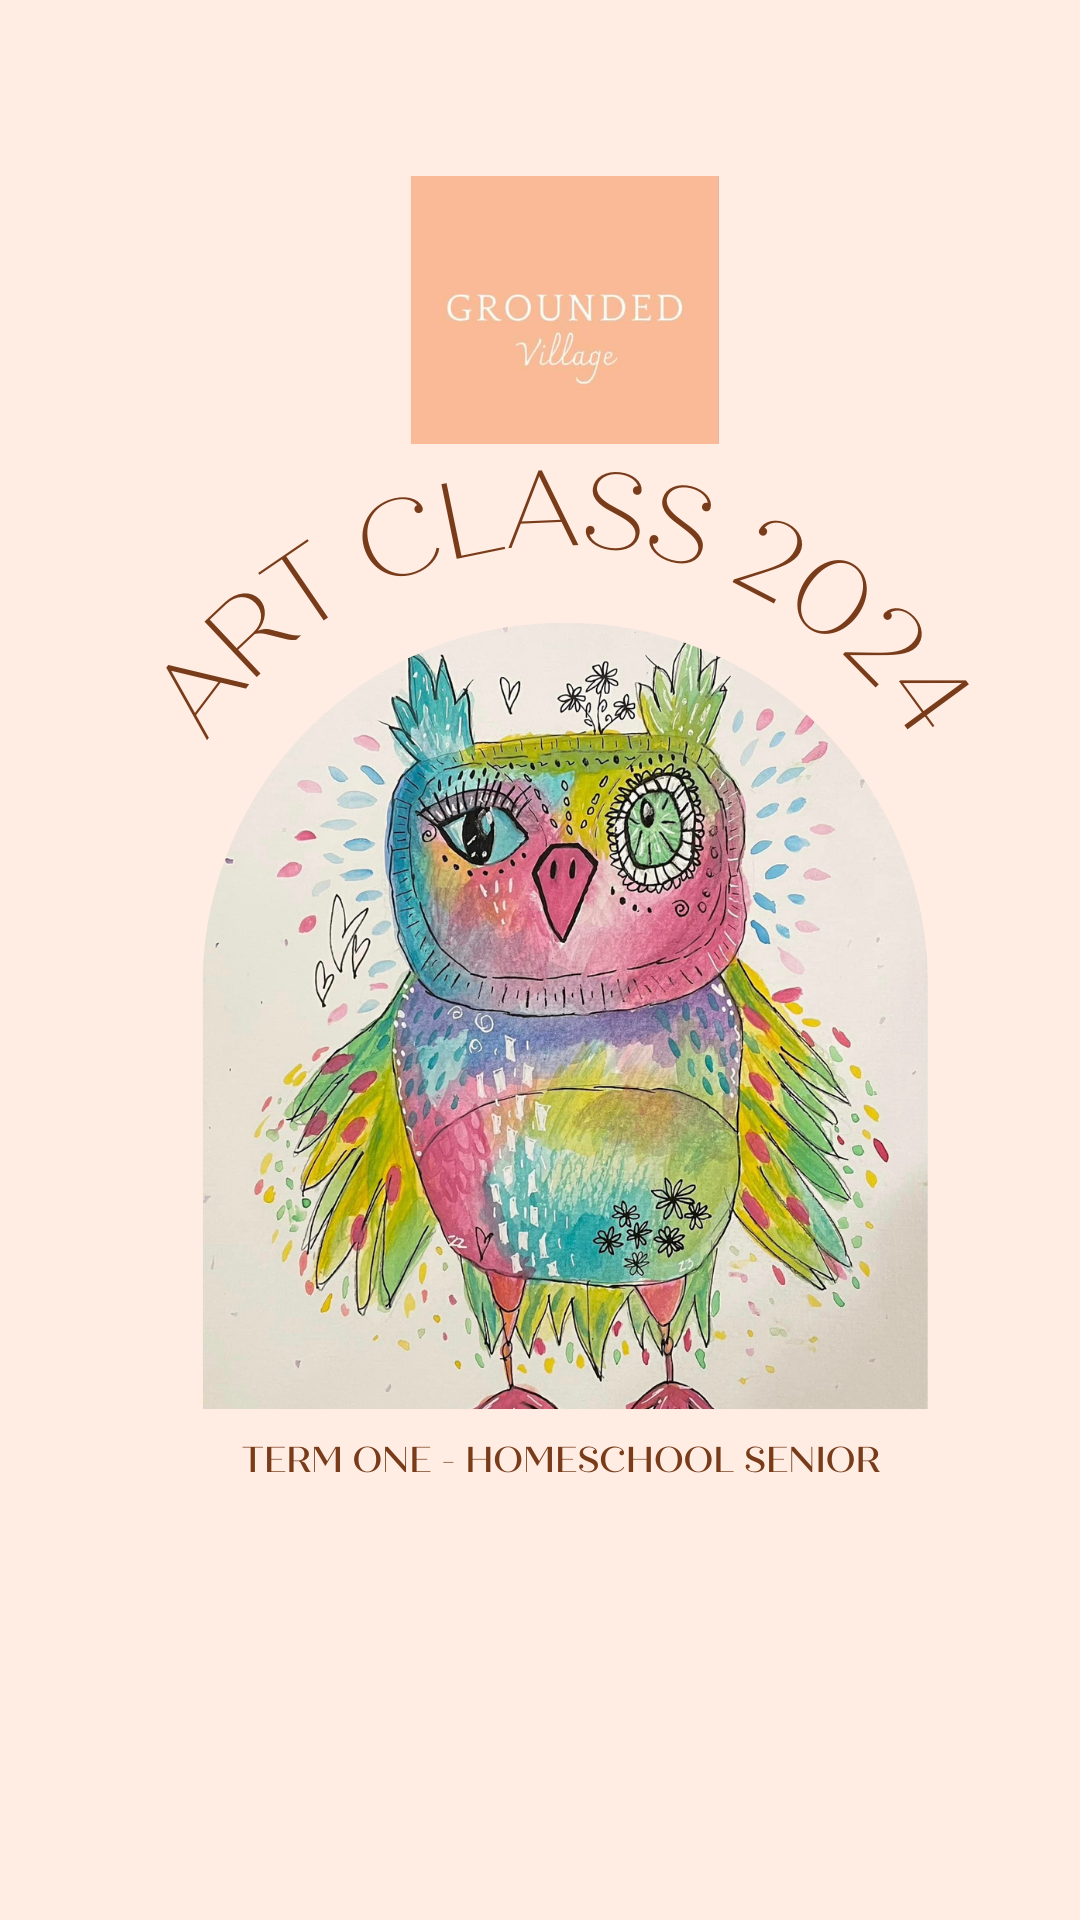 Homeschool senior art class - Thursday